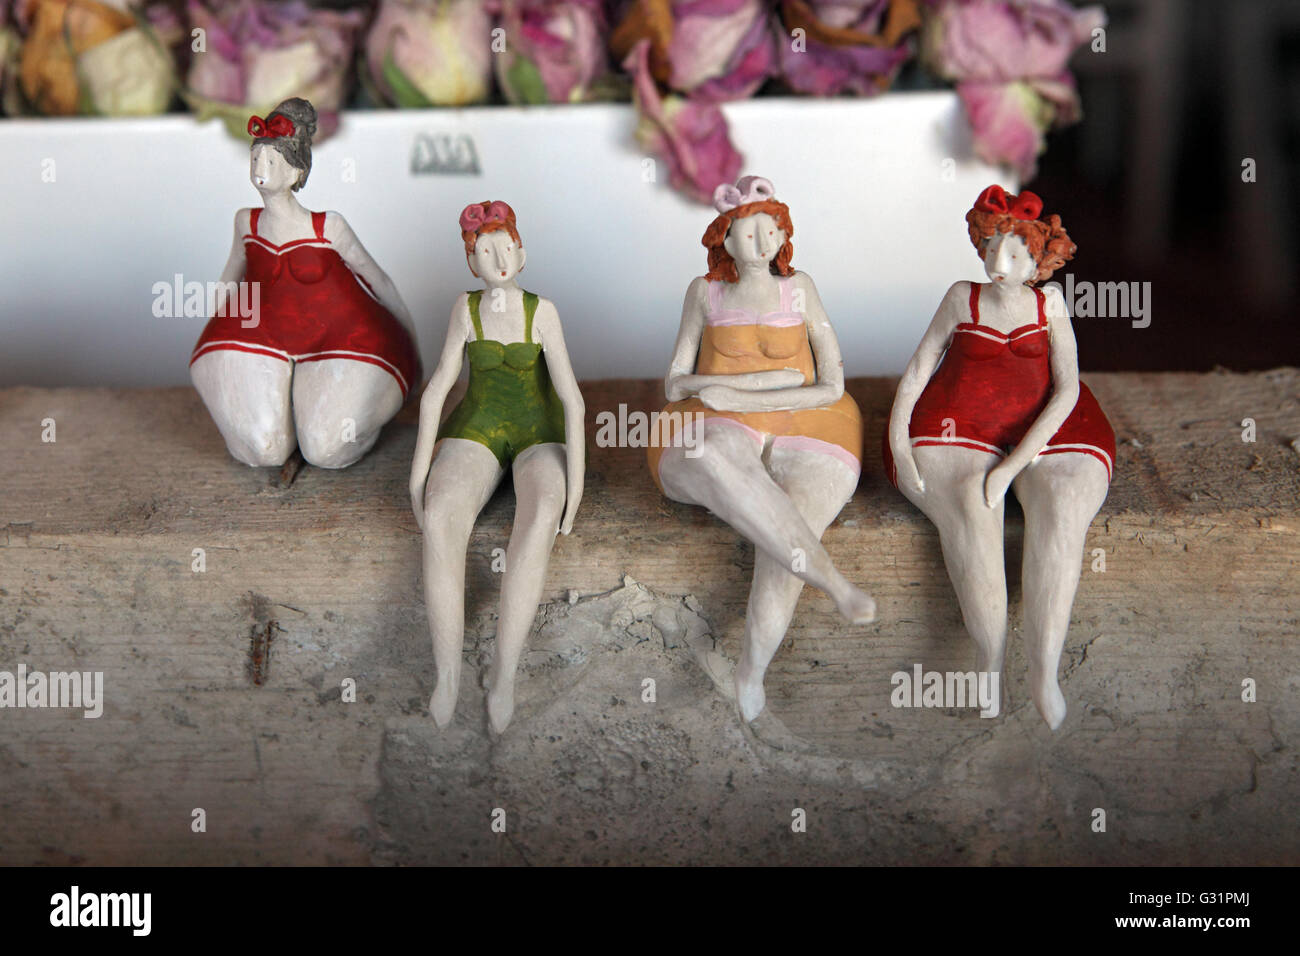 Zuerich, Suisse, chubby personnages féminins dans une vitrine Banque D'Images